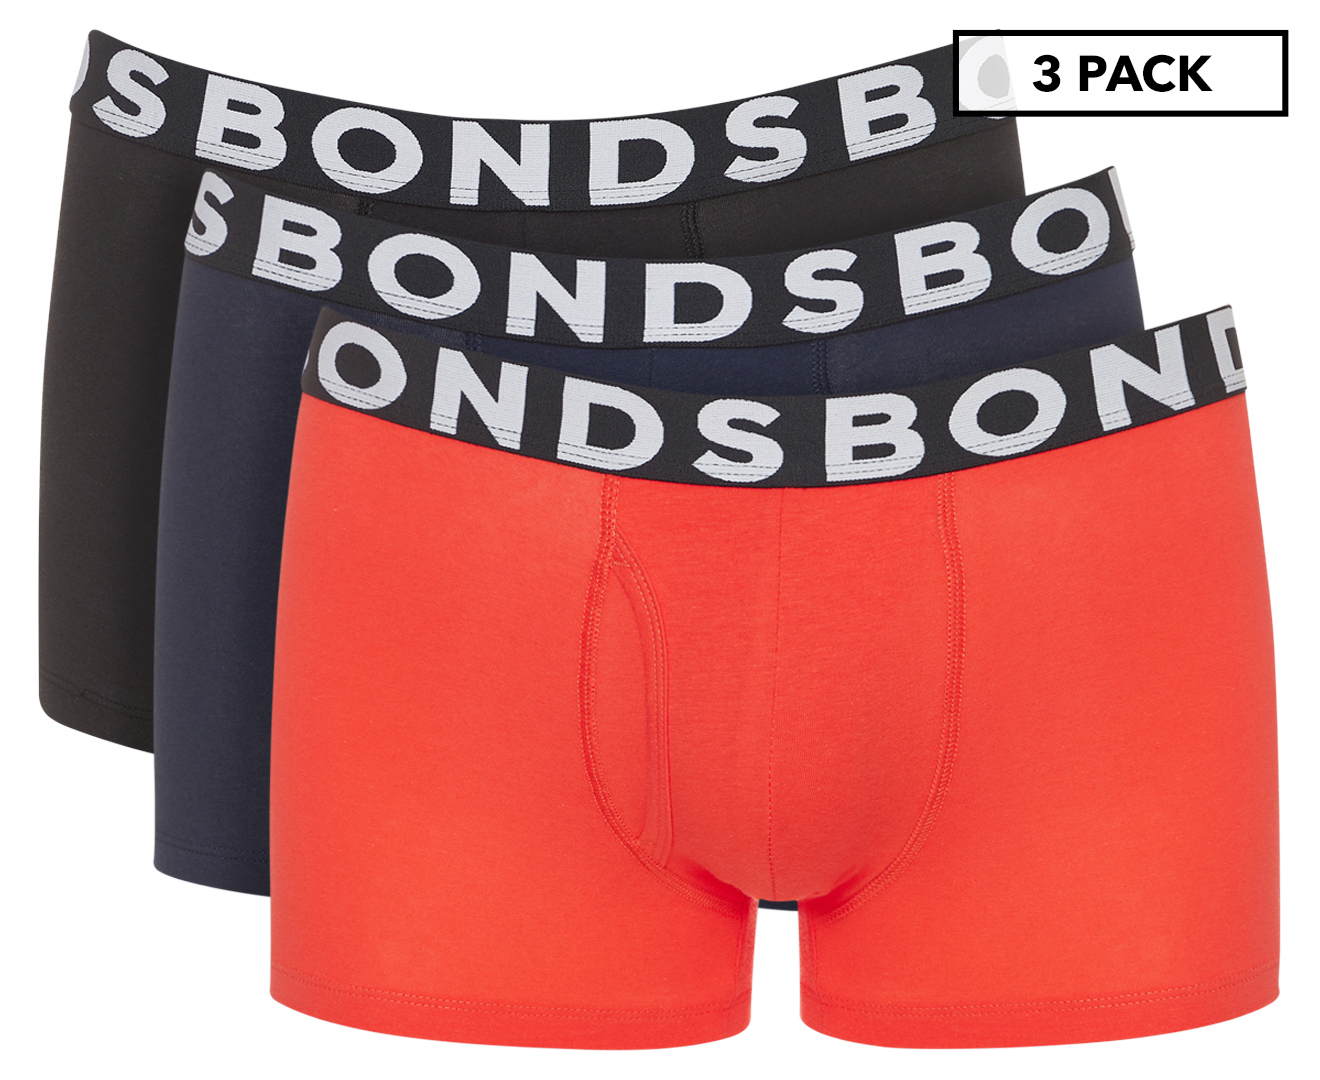 B FOR BONDS Men's Trunks 3 Pack